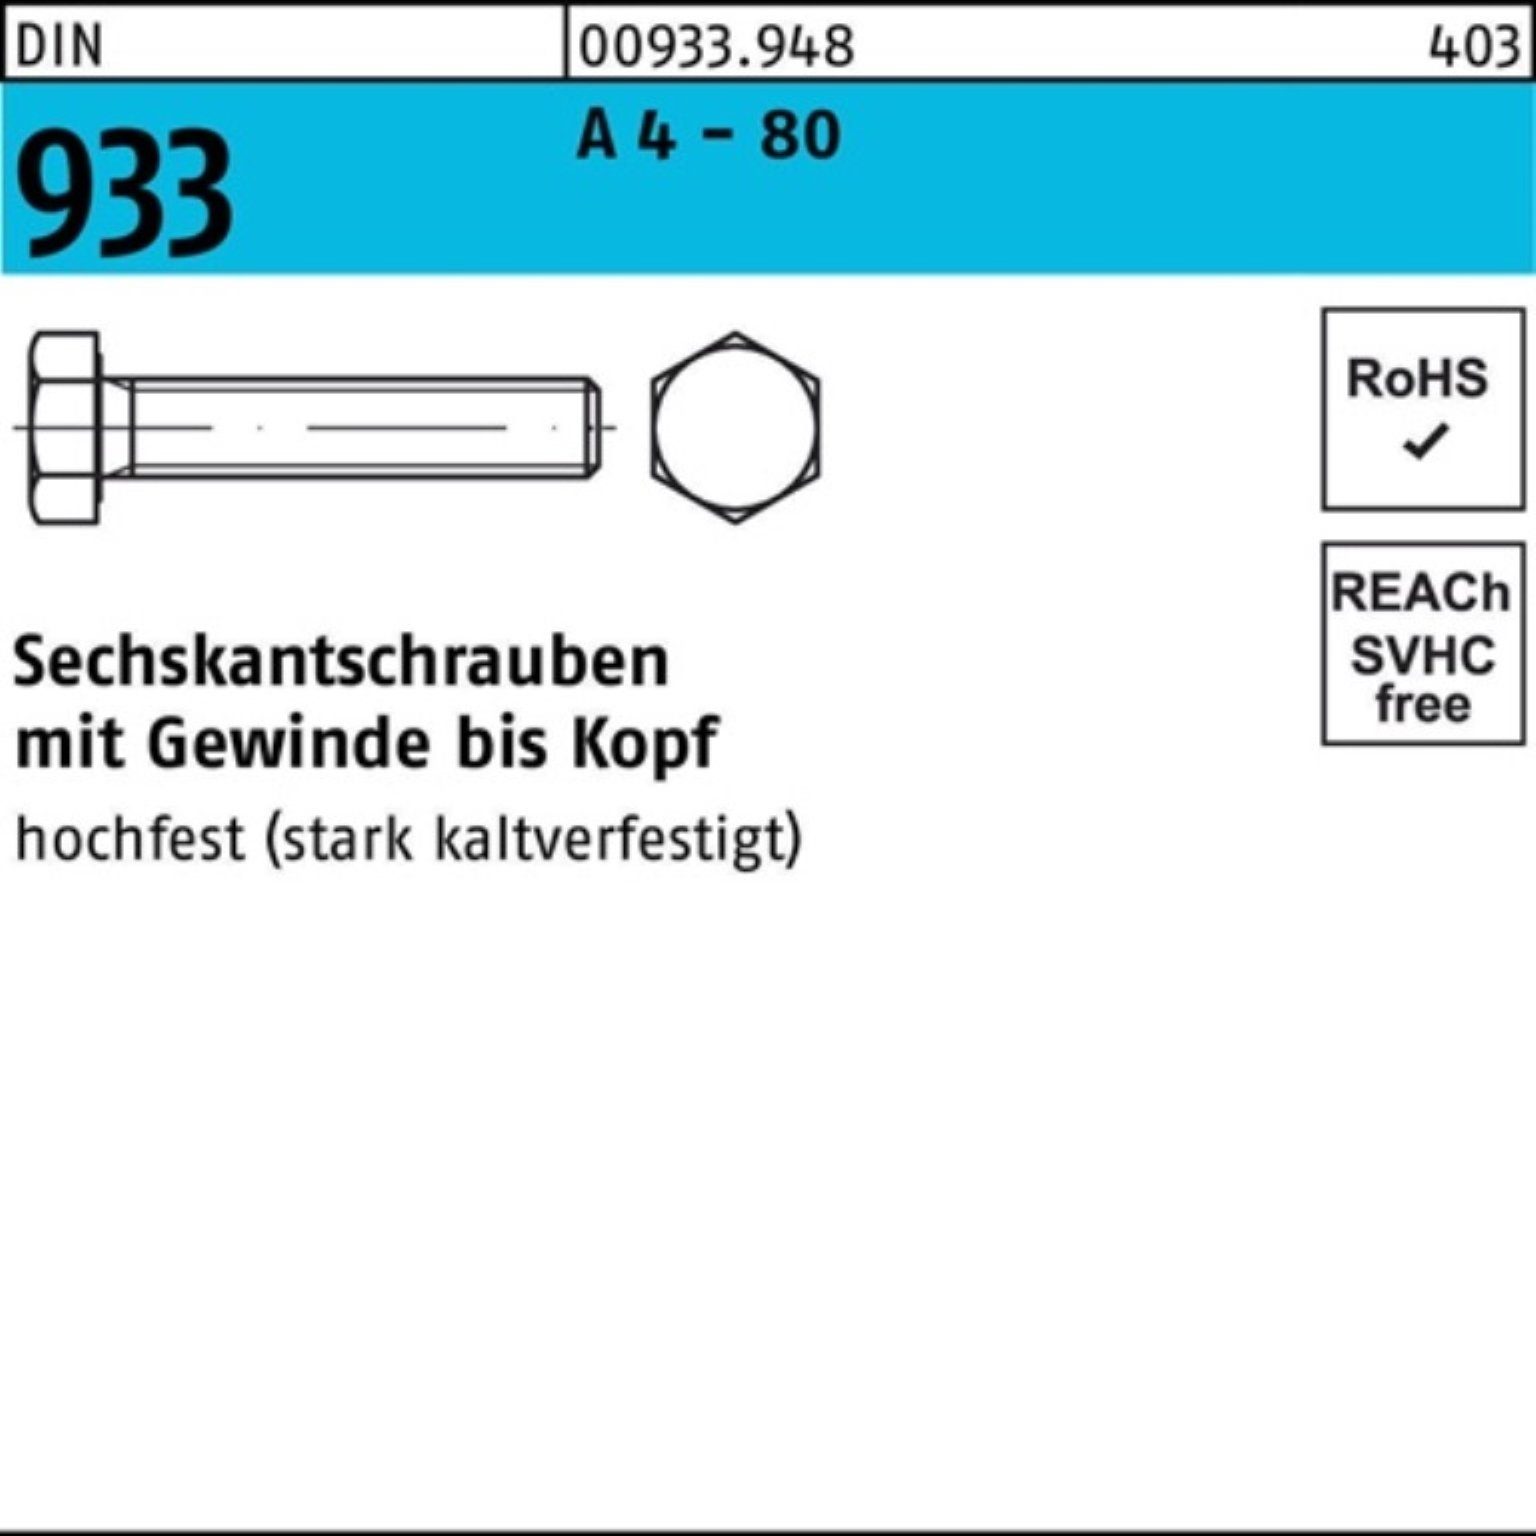 Reyher Sechskantschraube 100er Pack Sechskantschraube DIN 933 VG M24x 100 A 4 - 80 1 Stück DIN